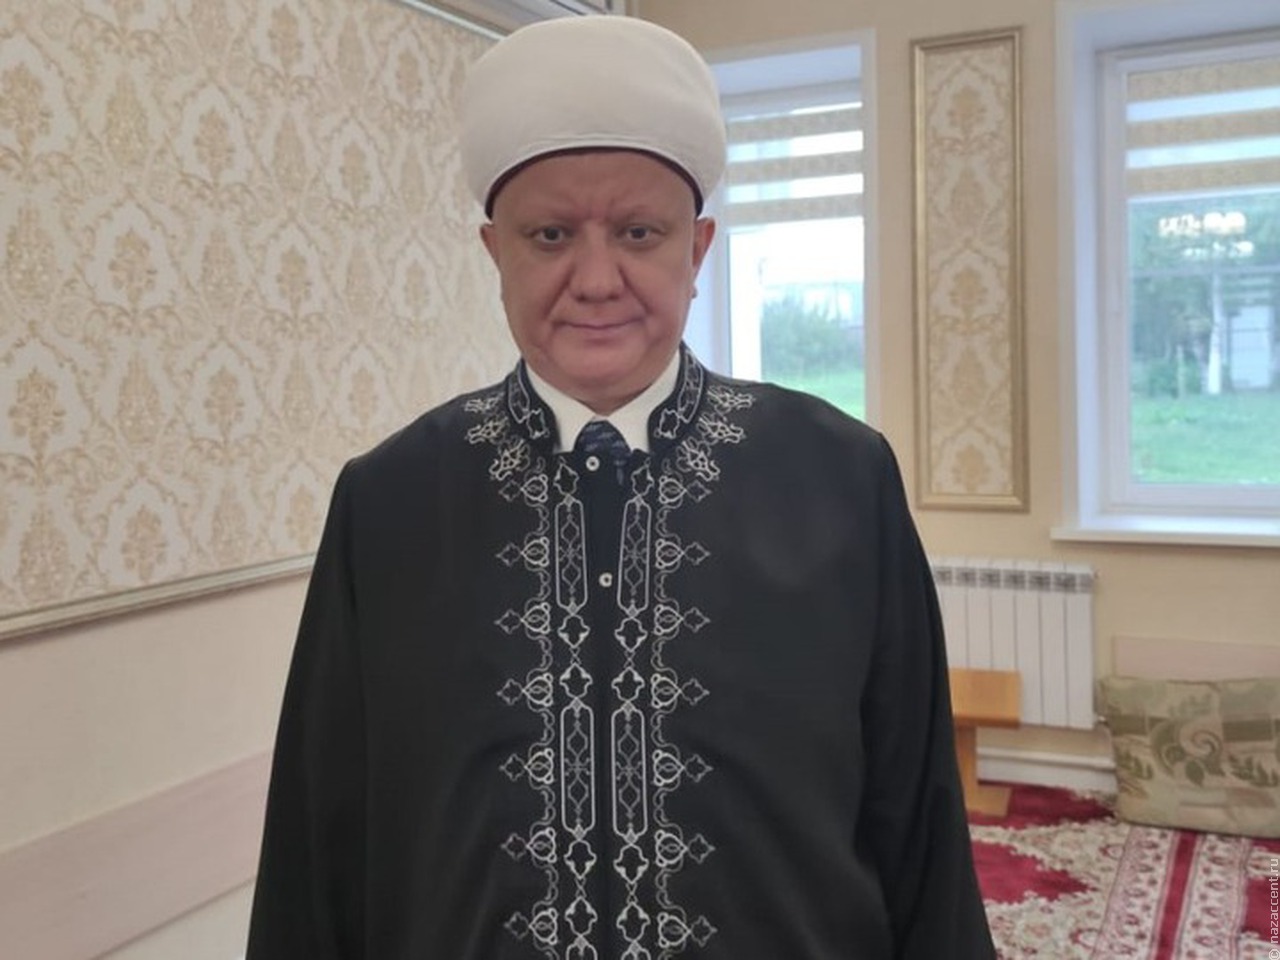 Муфтий Крганов: Митинги протеста неприемлемы для мусульманского сообщества